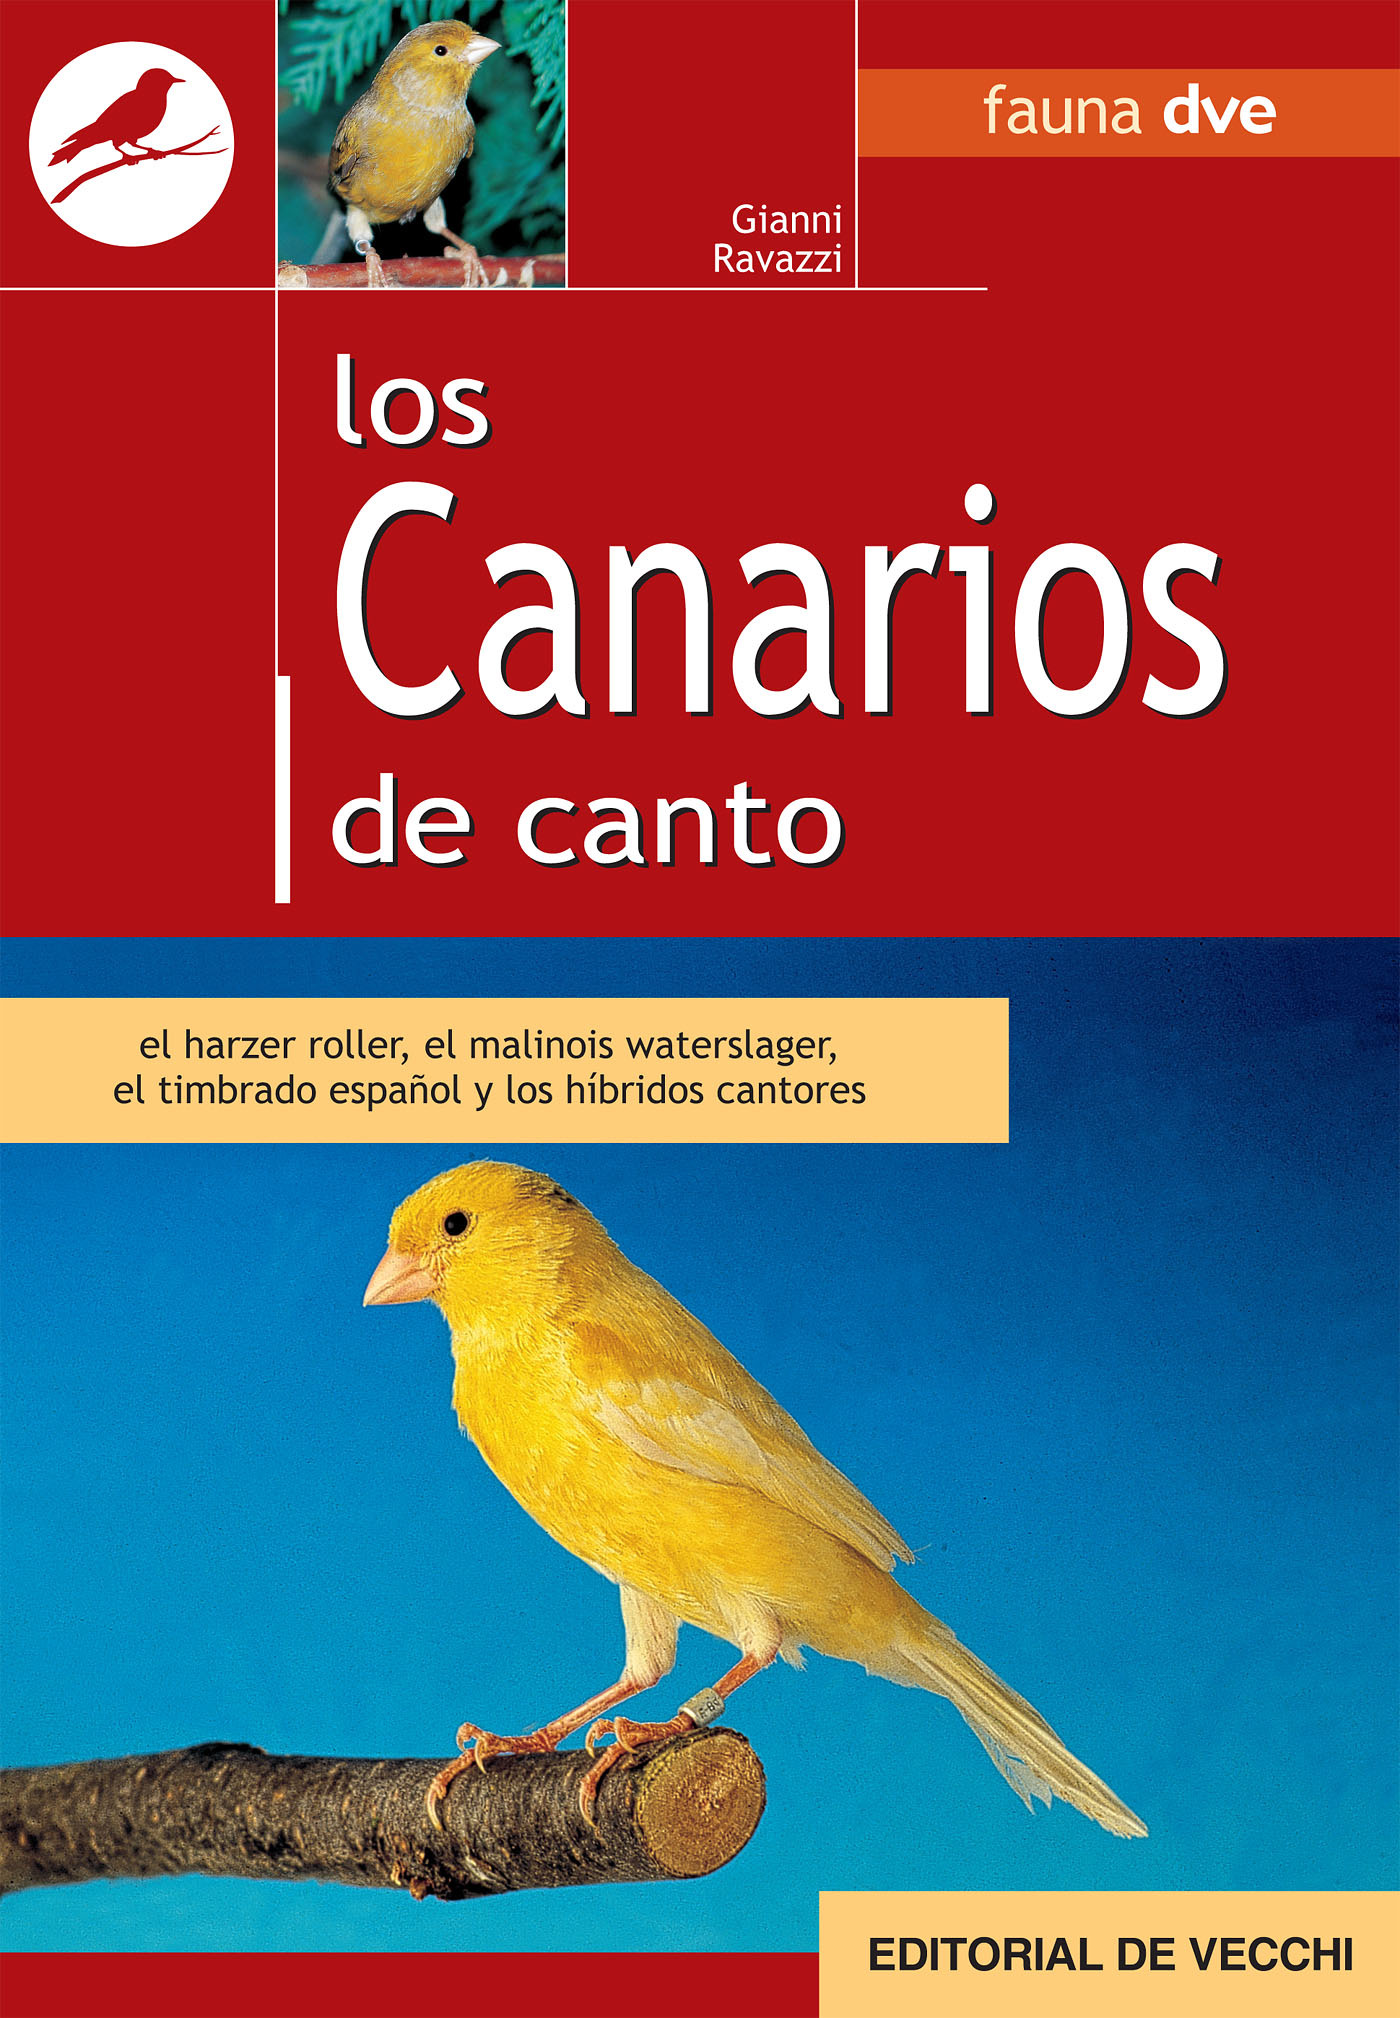 Ravazzi, Gianni - Los canarios de canto, ebook